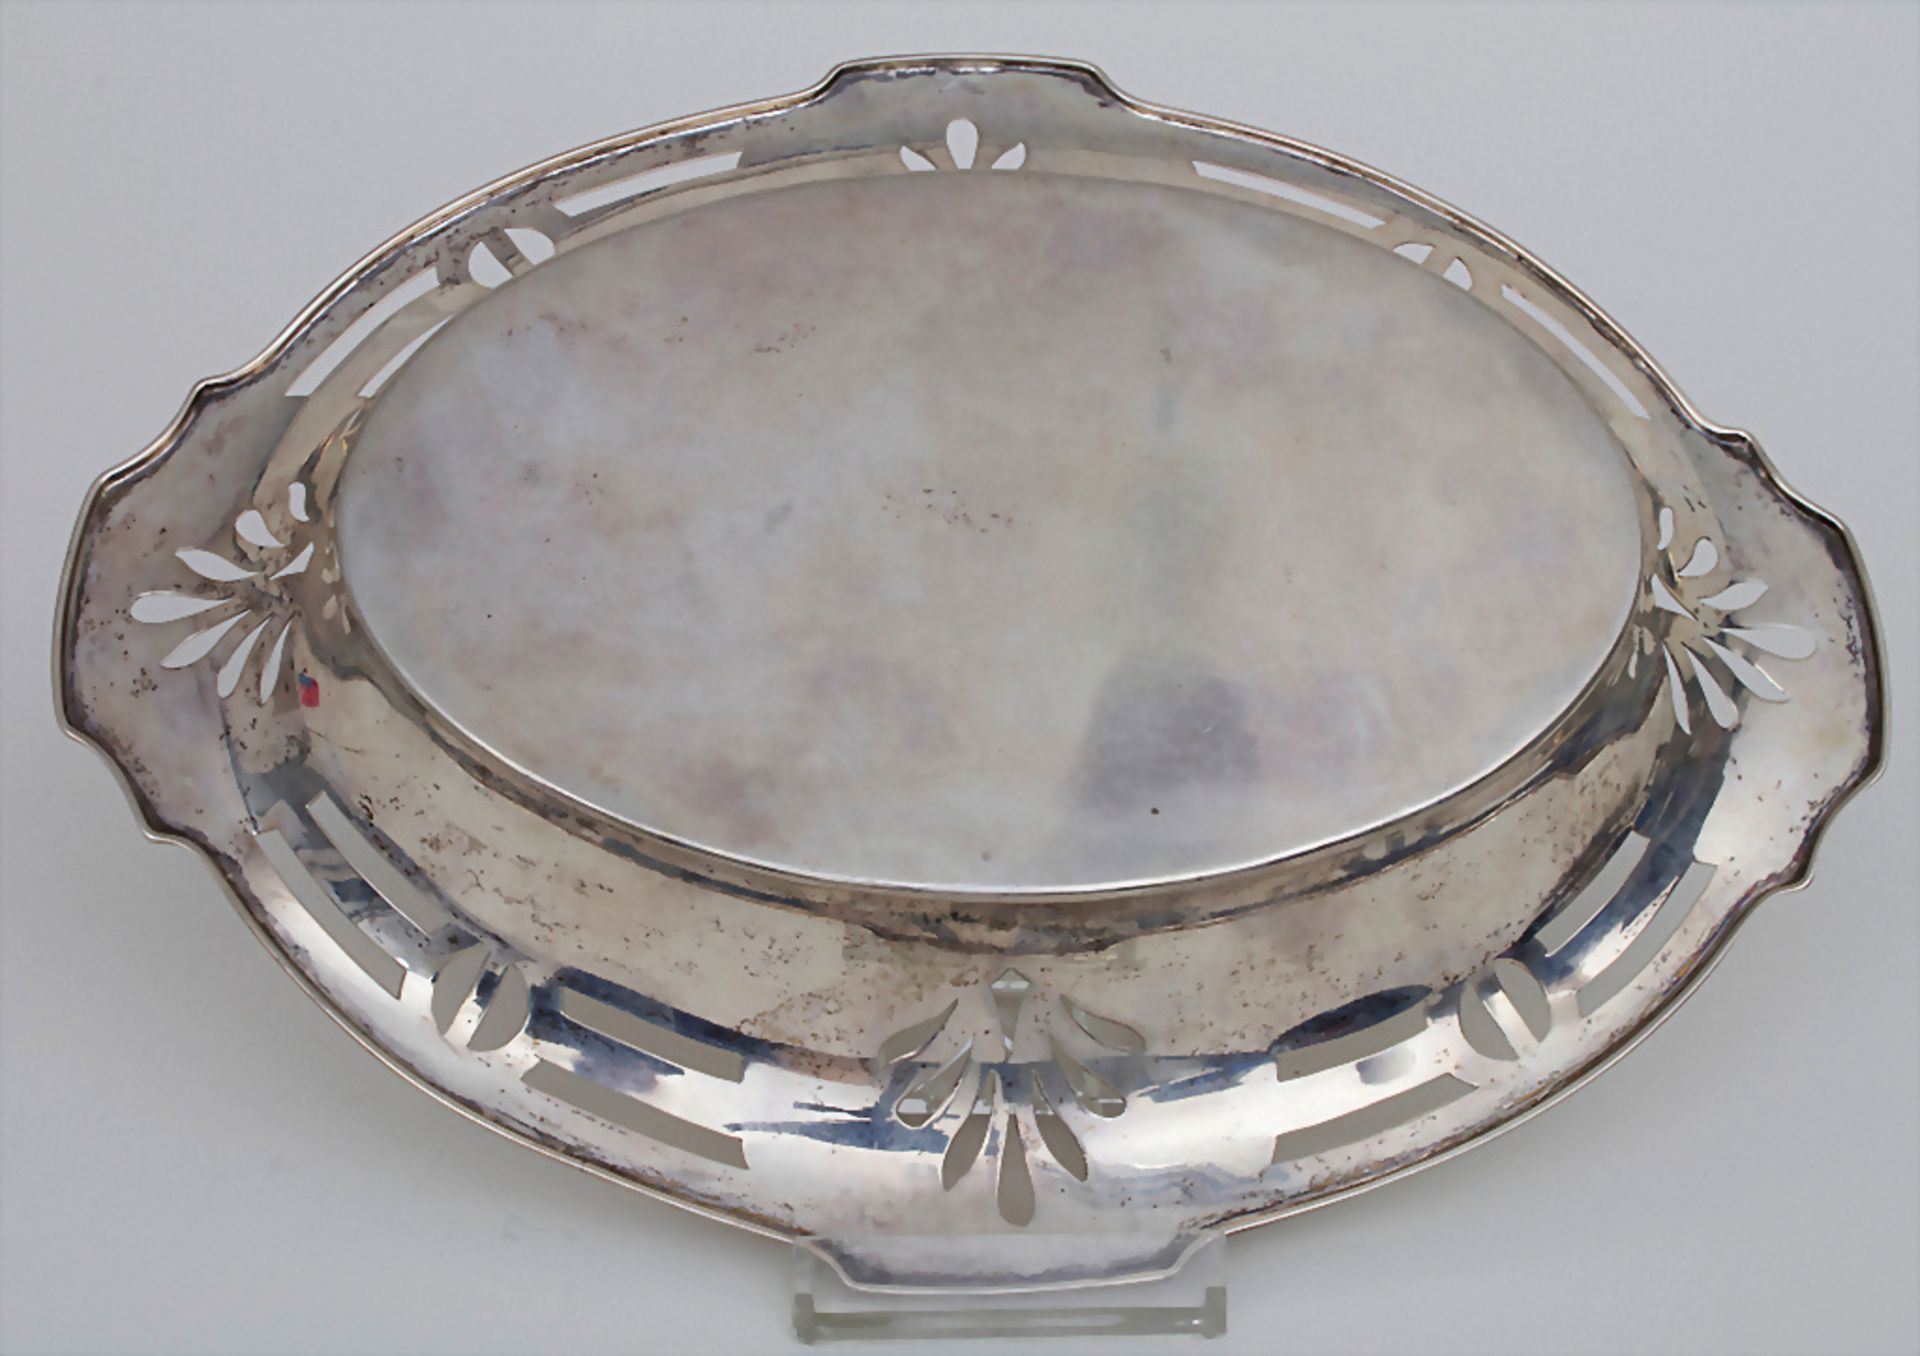 Ovale Jugendstil Silberschale / An oval Art Nouveau silver bowl, Wien / Vienna, um 1900 - Image 2 of 4